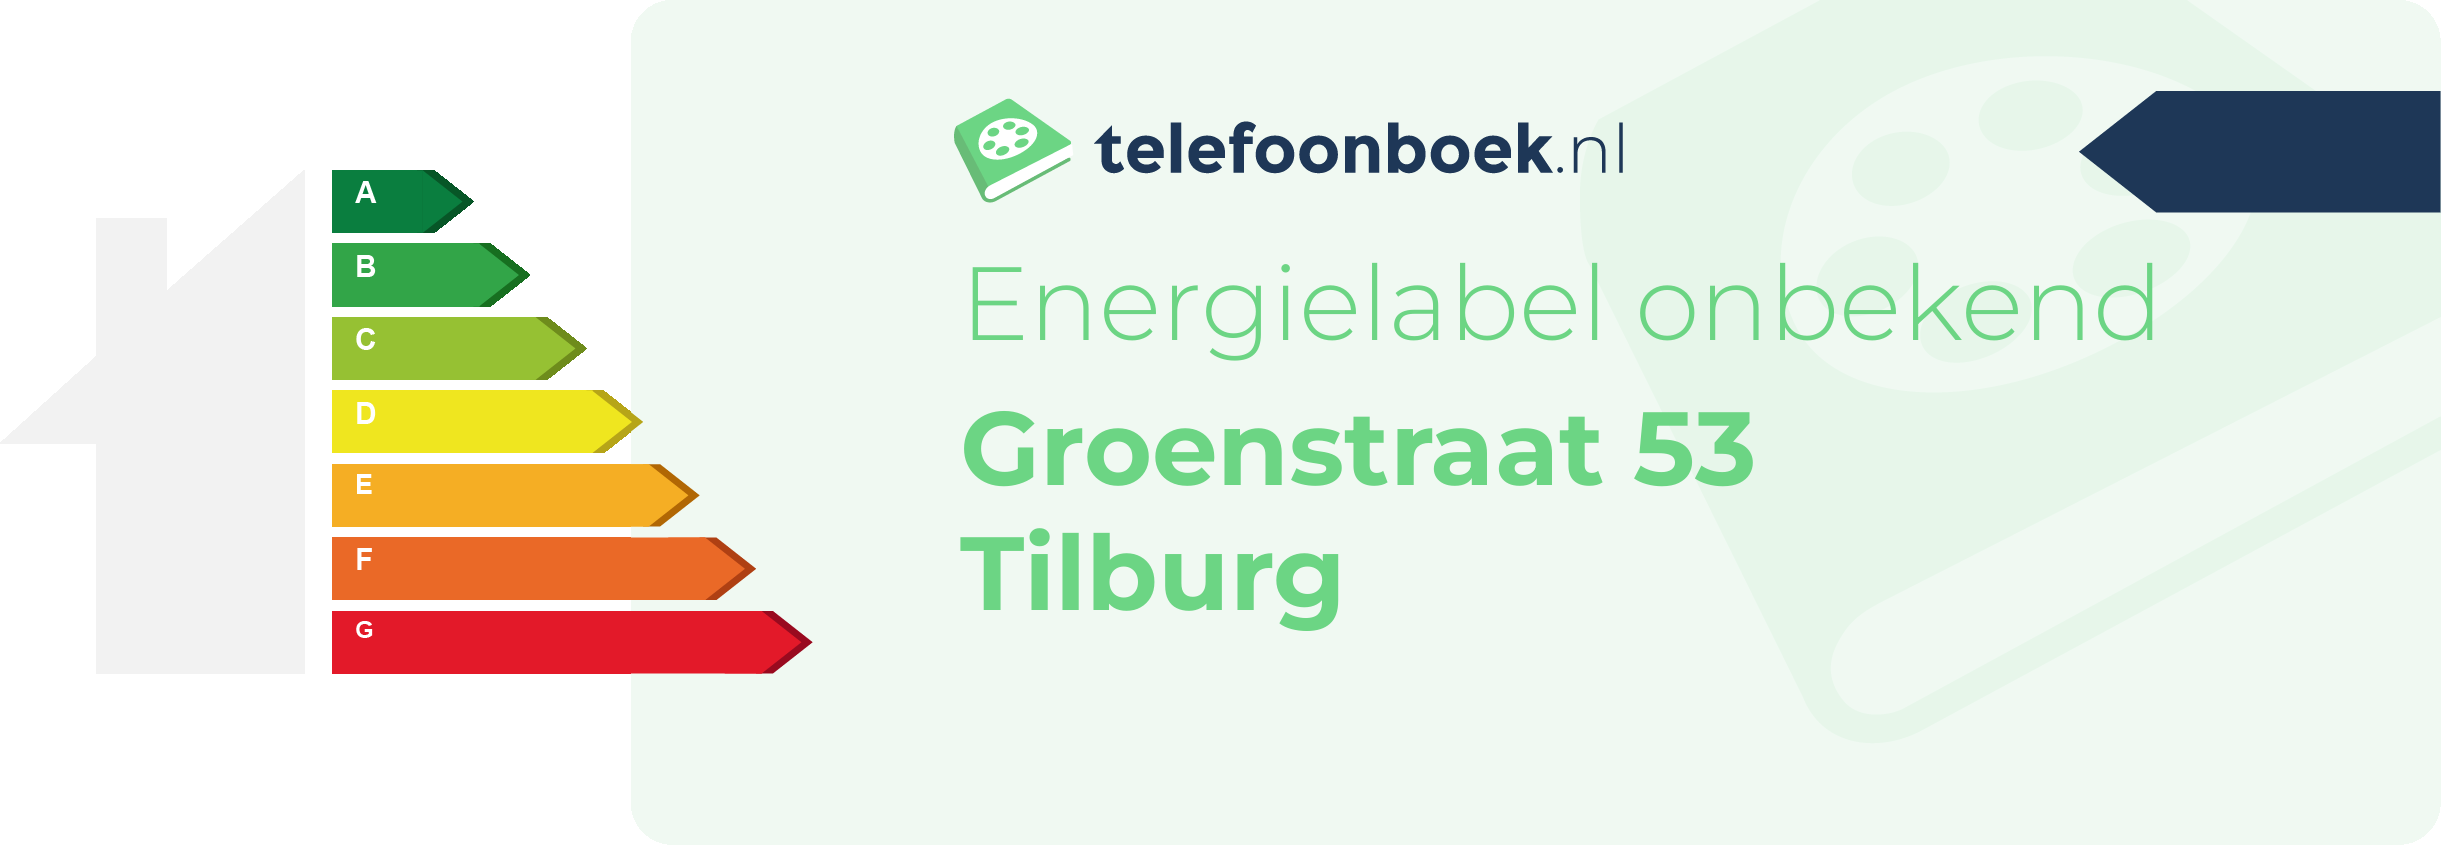 Energielabel Groenstraat 53 Tilburg